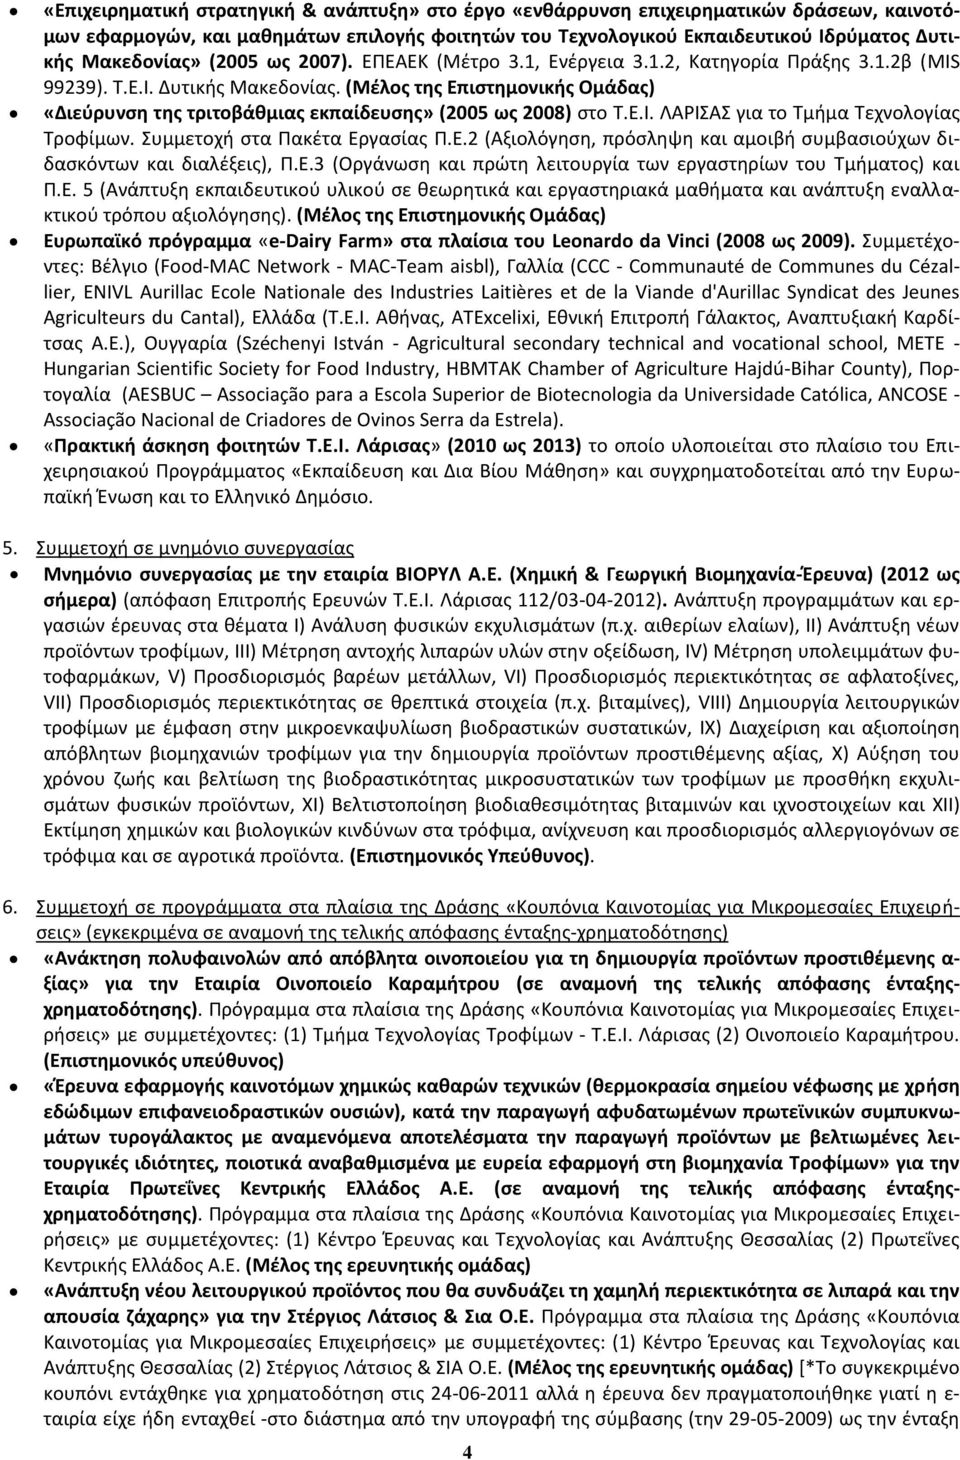 (Μέλος της Επιστημονικής Ομάδας) «Διεύρυνση της τριτοβάθμιας εκπαίδευσης» (2005 ως 2008) στο Τ.Ε.Ι. ΛΑΡΙΣΑΣ για το Τμήμα Τεχνολογίας Τροφίμων. Συμμετοχή στα Πακέτα Εργασίας Π.Ε.2 (Αξιολόγηση, πρόσληψη και αμοιβή συμβασιούχων διδασκόντων και διαλέξεις), Π.